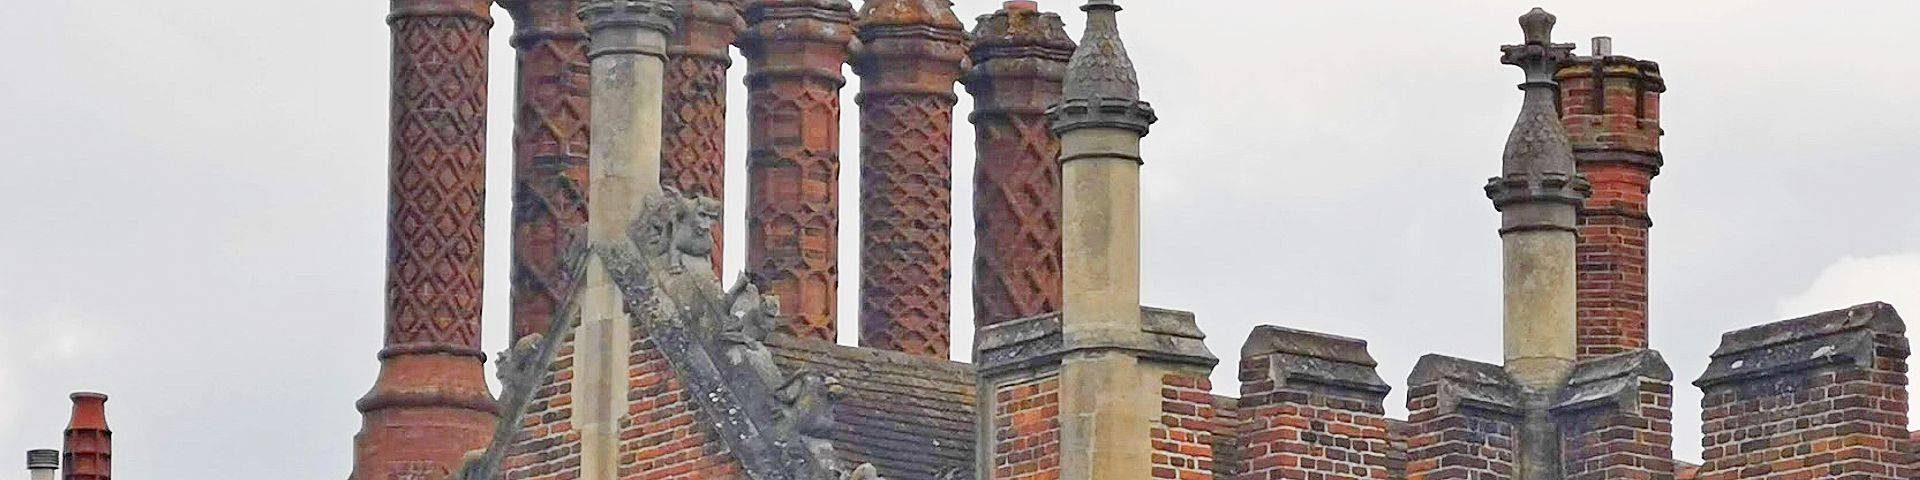 chimney banner